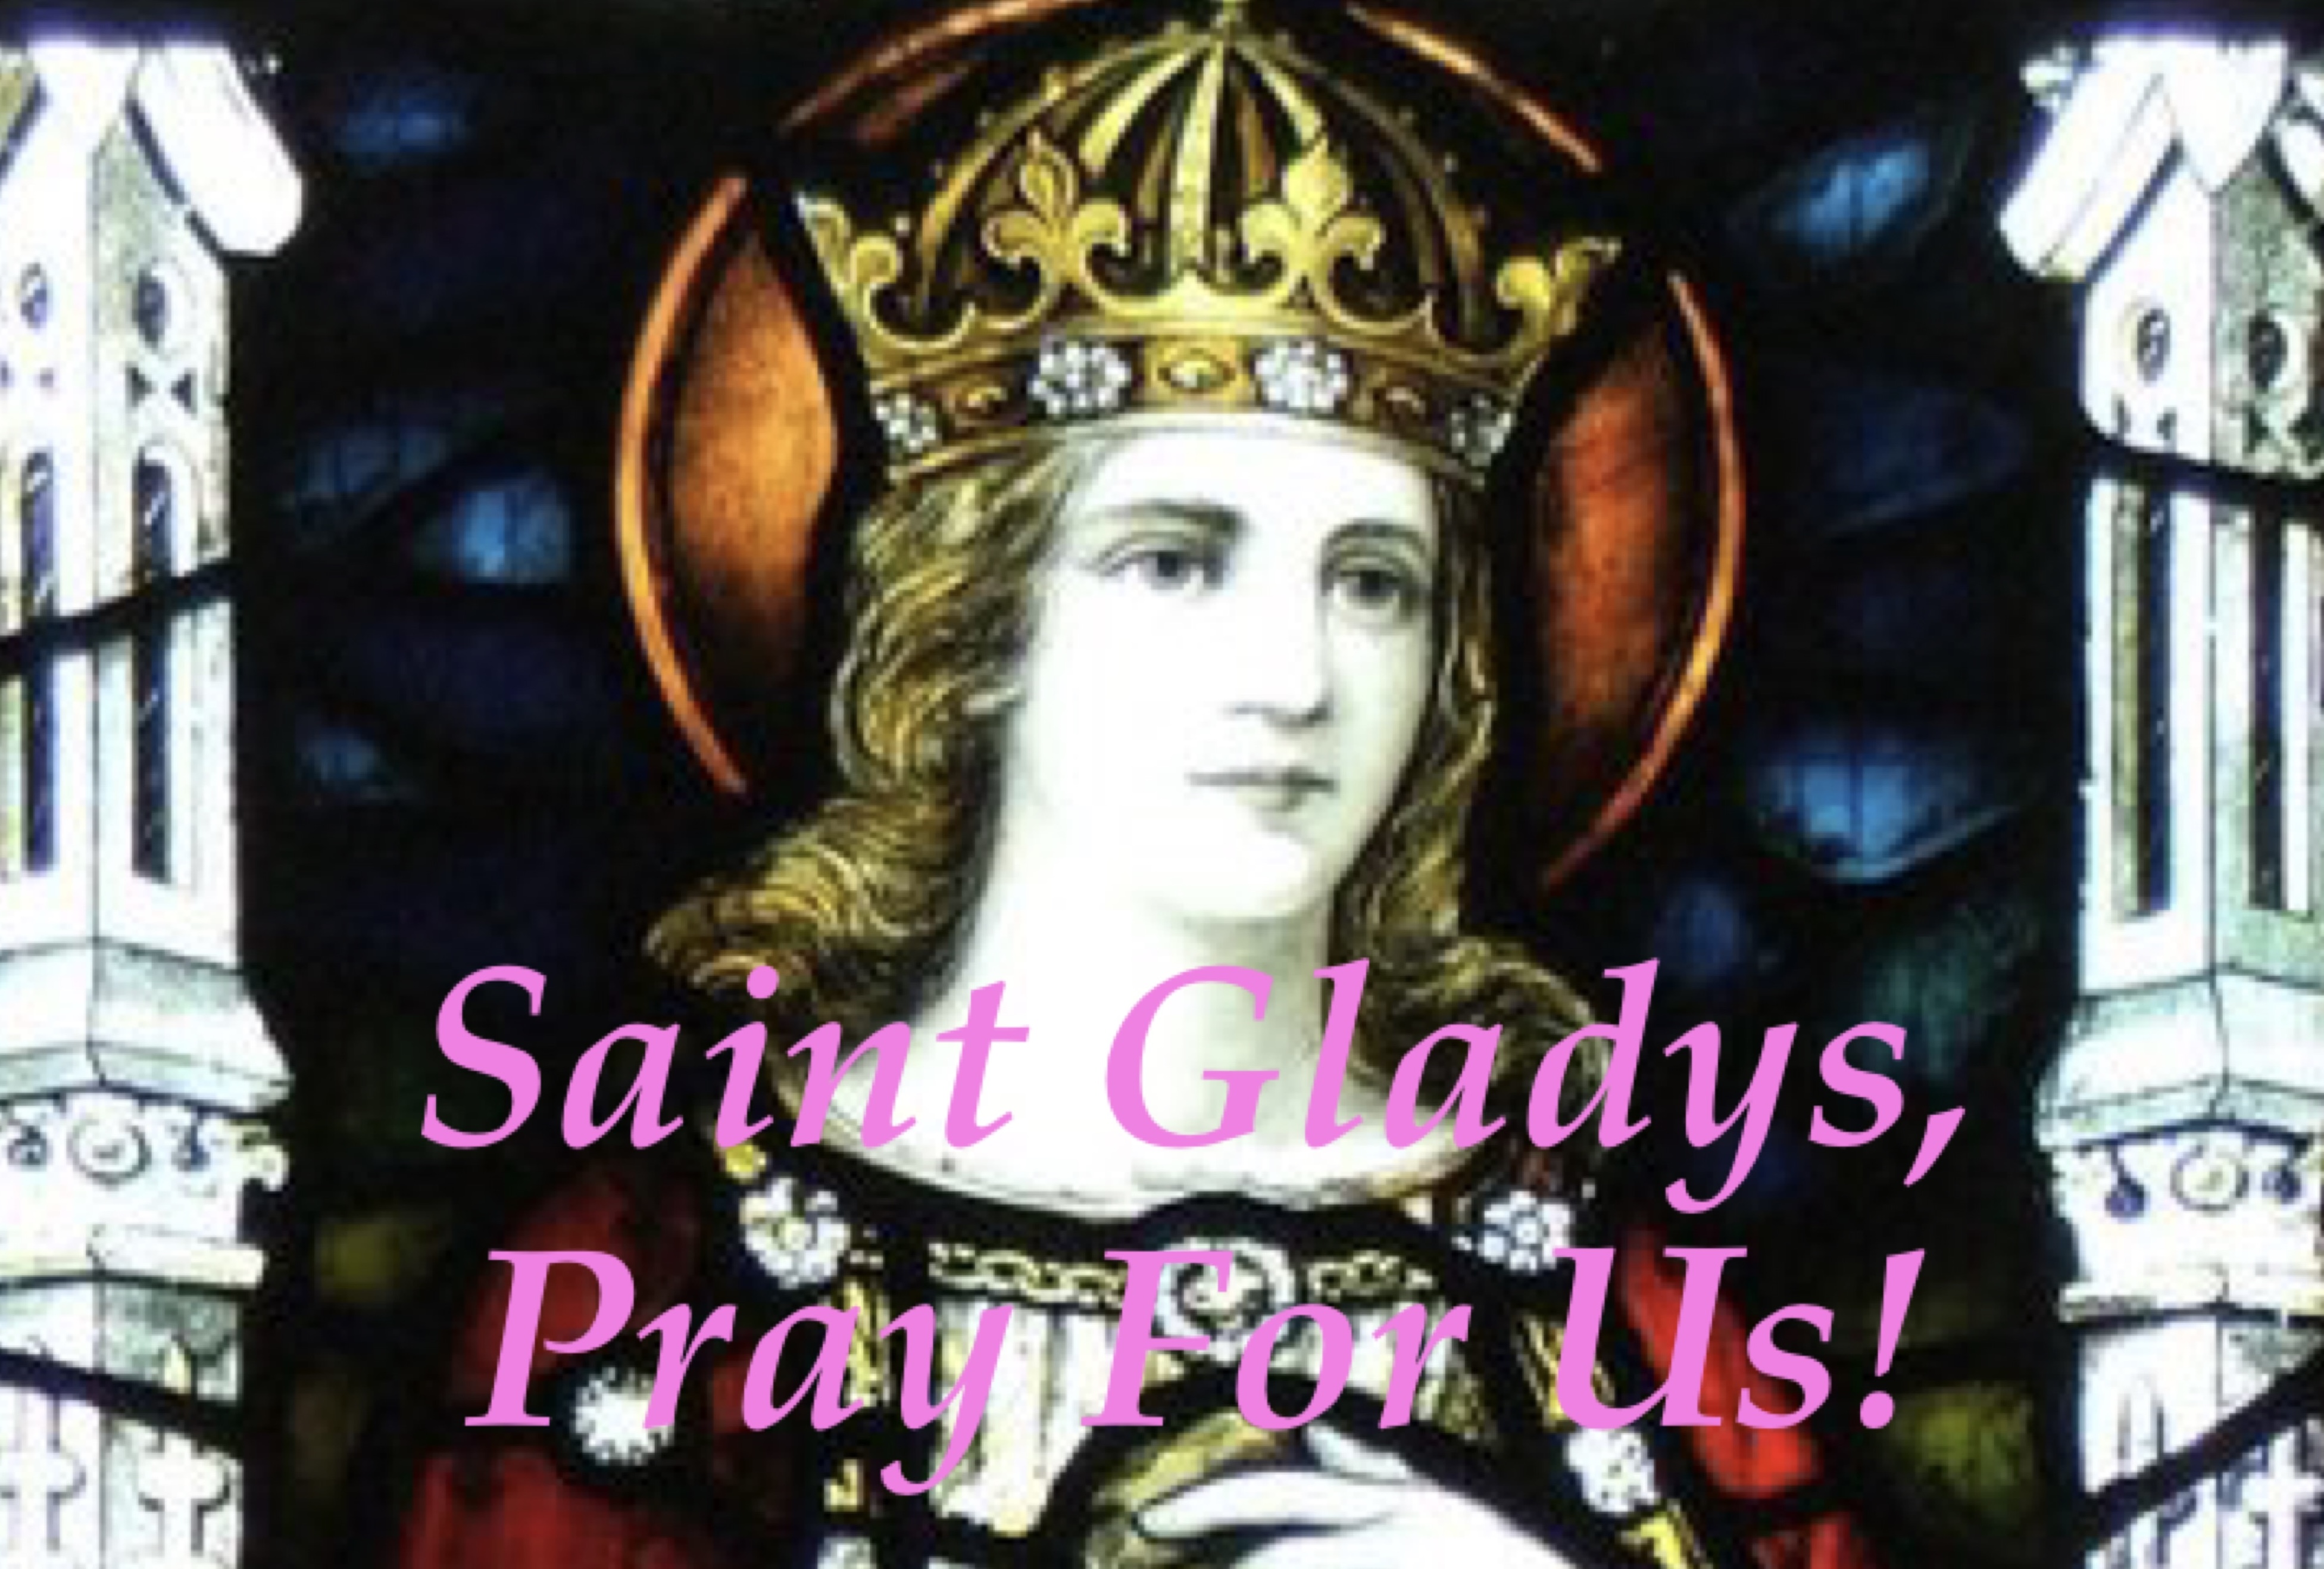 29th March - Saint Gladys